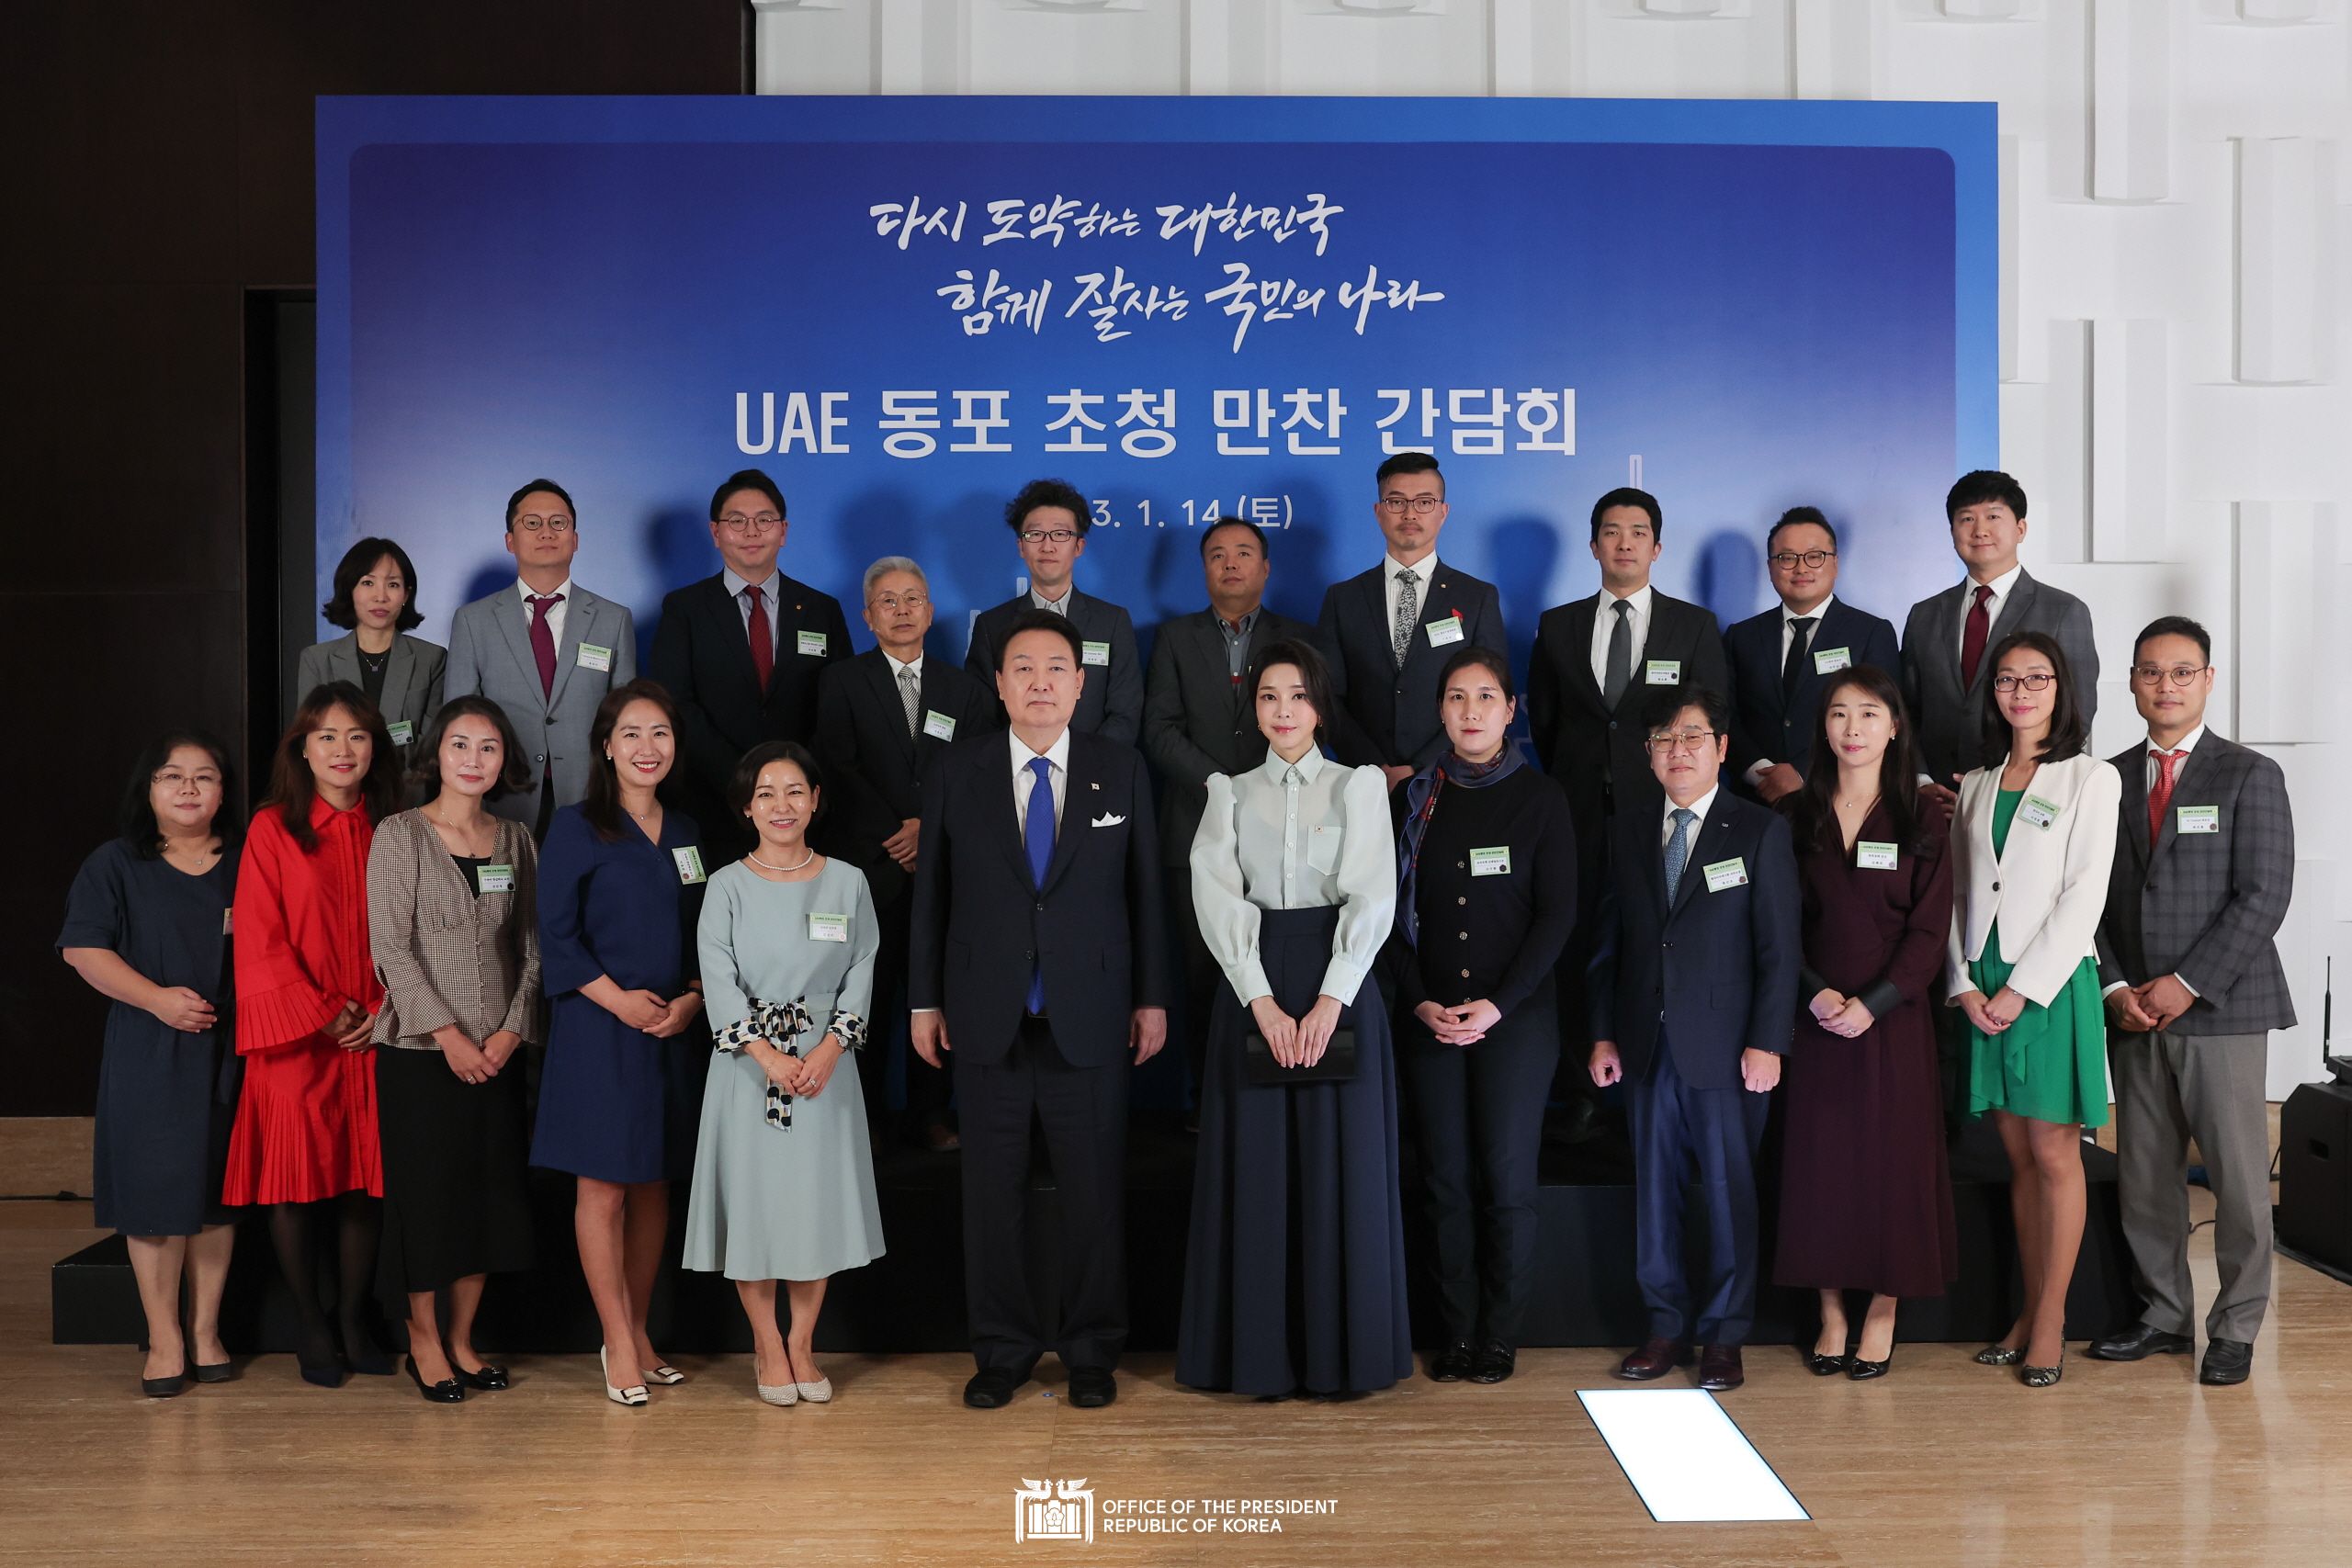 Meeting with members of the Korean community in the UAE slide 1